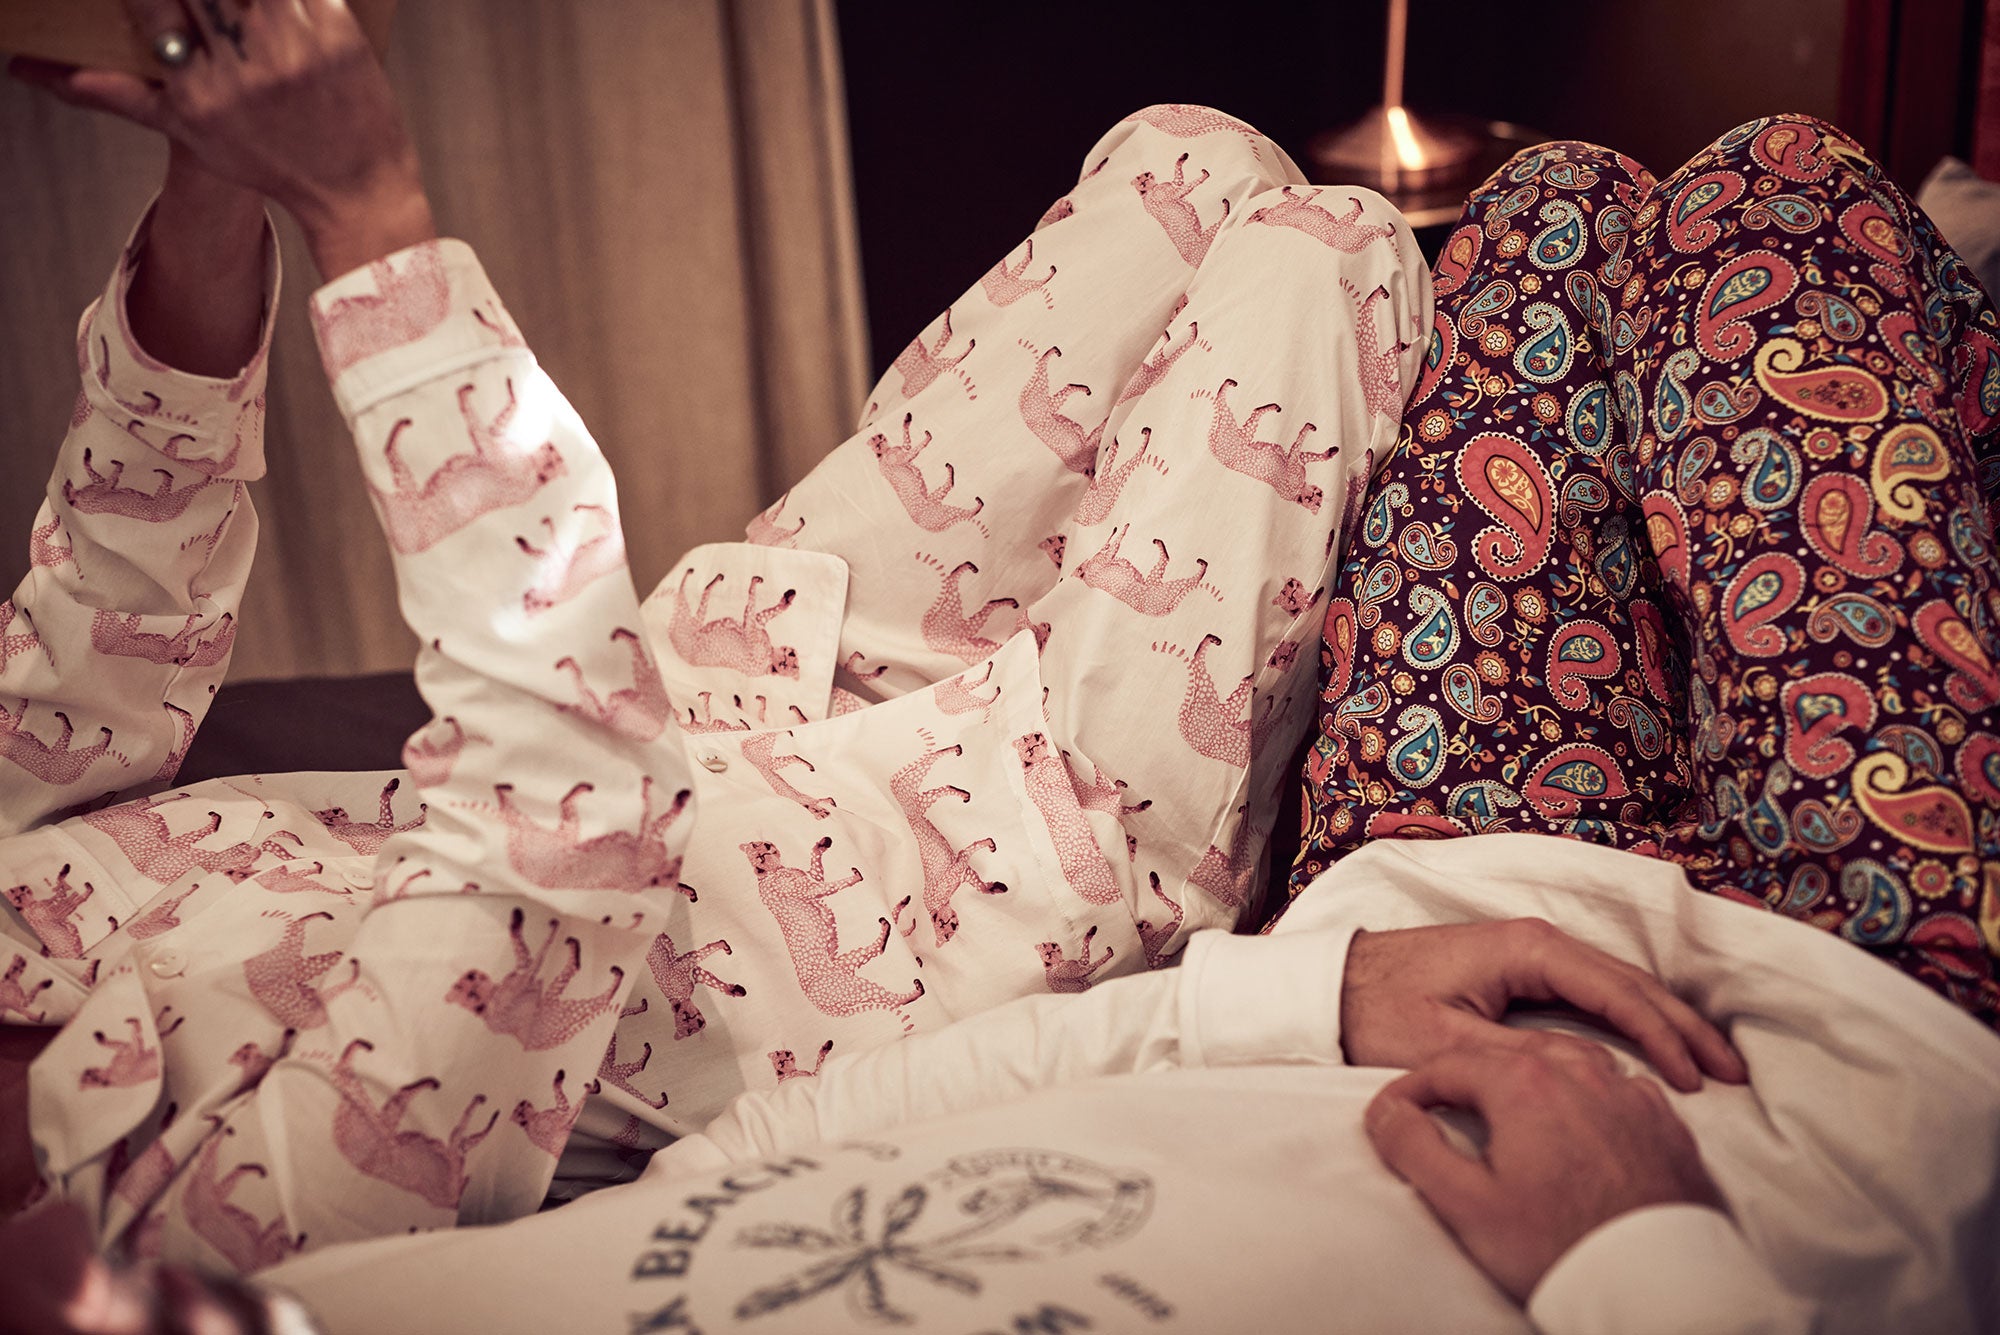 Wearing pyjamas to bed